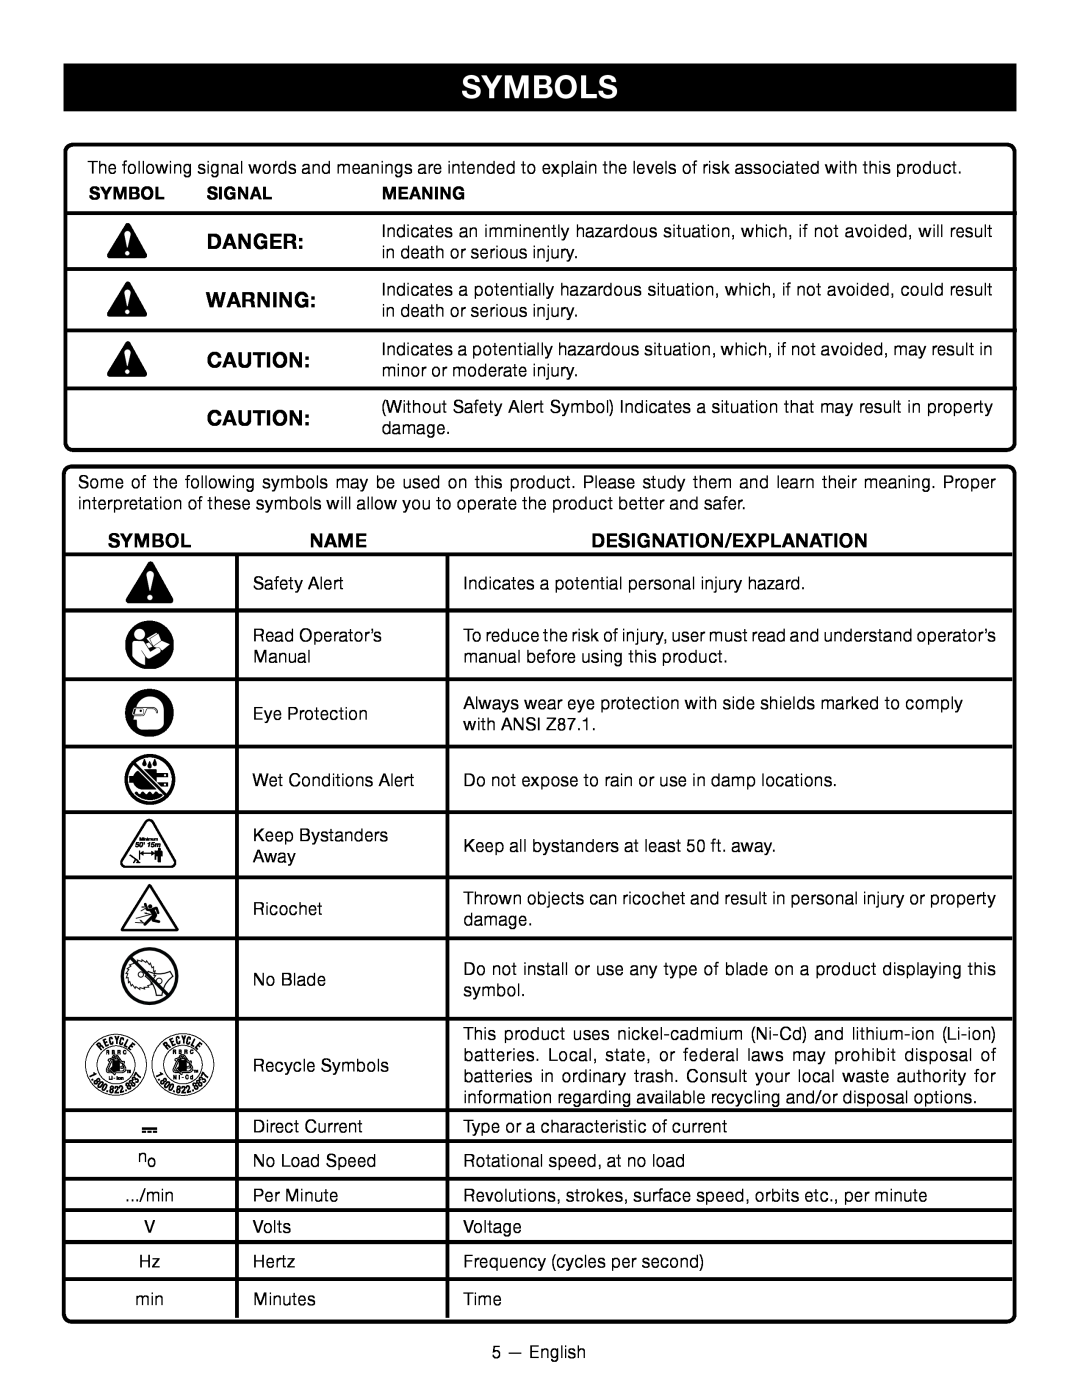 Ryobi RY24200 manuel dutilisation Symbols, Danger, Name, Designation/Explanation, Signal, Meaning 